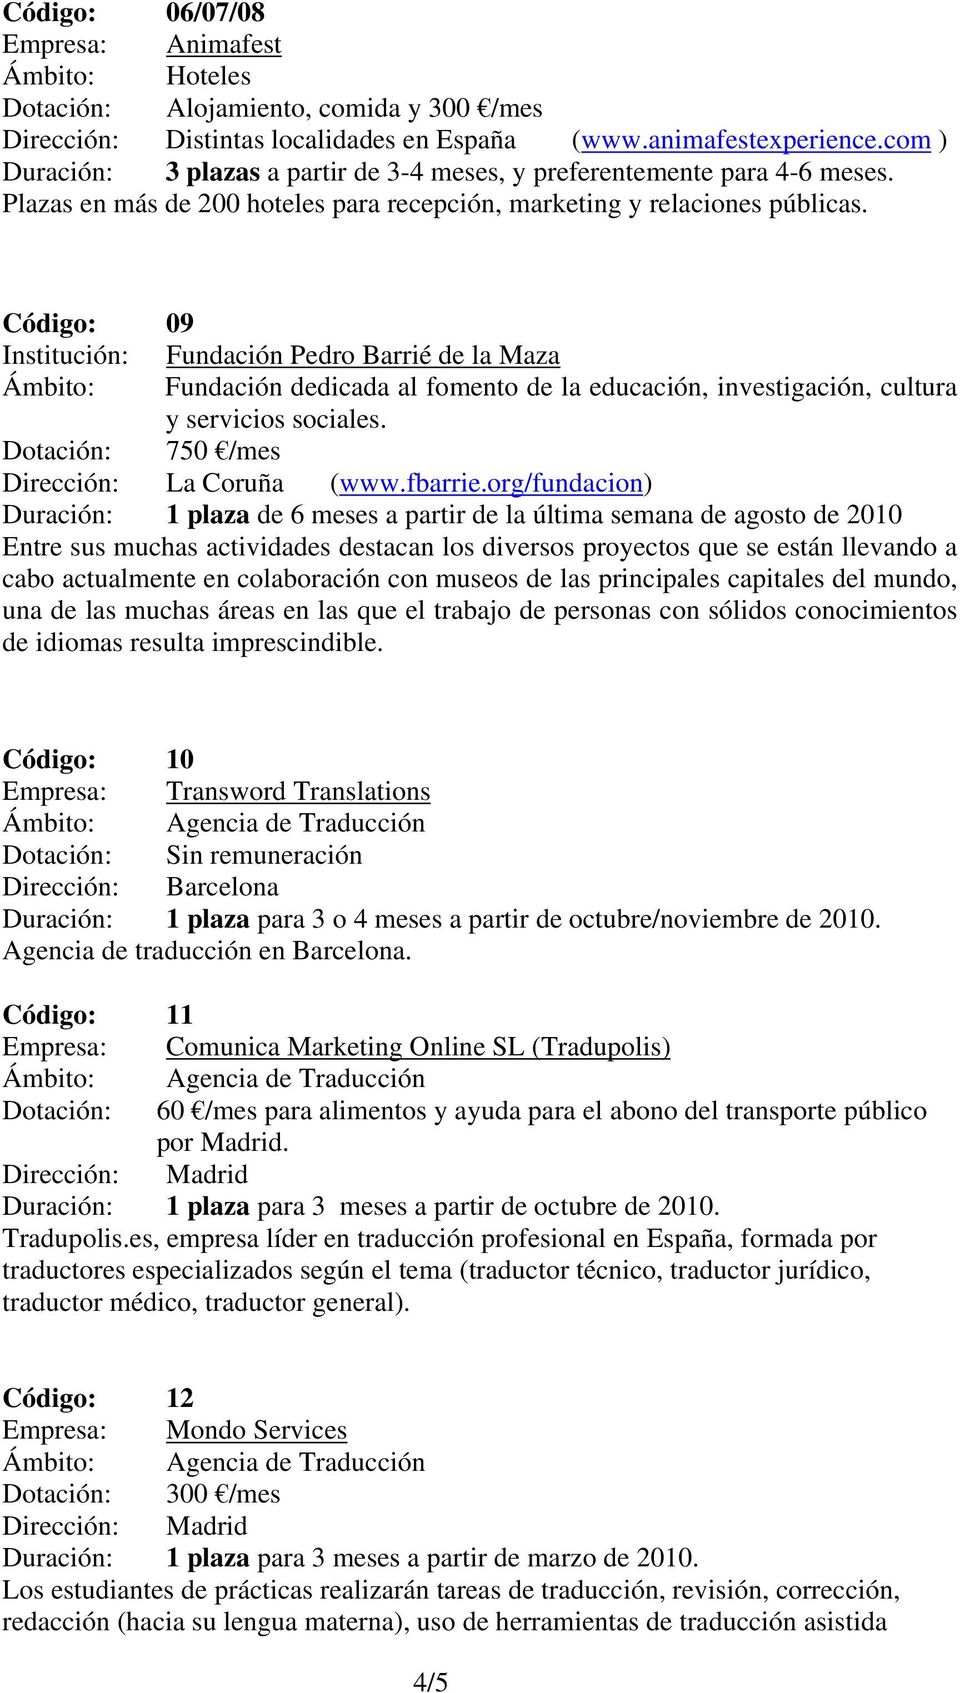 Código: 09 Institución: Fundación Pedro Barrié de la Maza dedicada al fomento de la educación, investigación, cultura y servicios sociales. Dotación: 750 /mes Dirección: La Coruña (www.fbarrie.